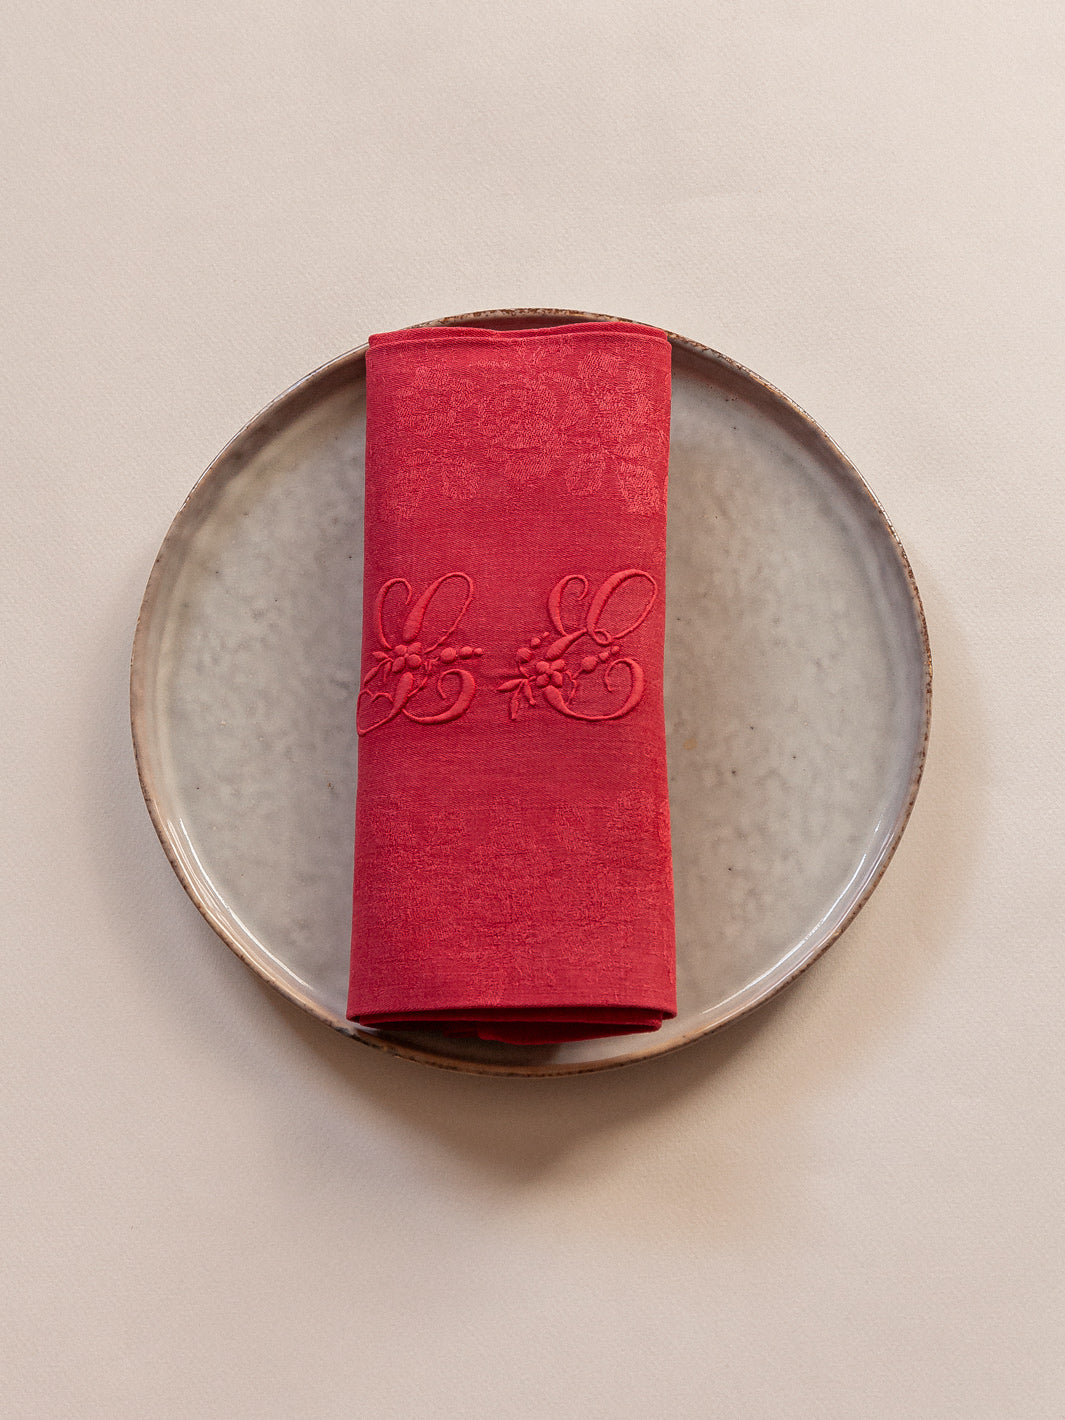 Set of 8 red damask napkins "LE"